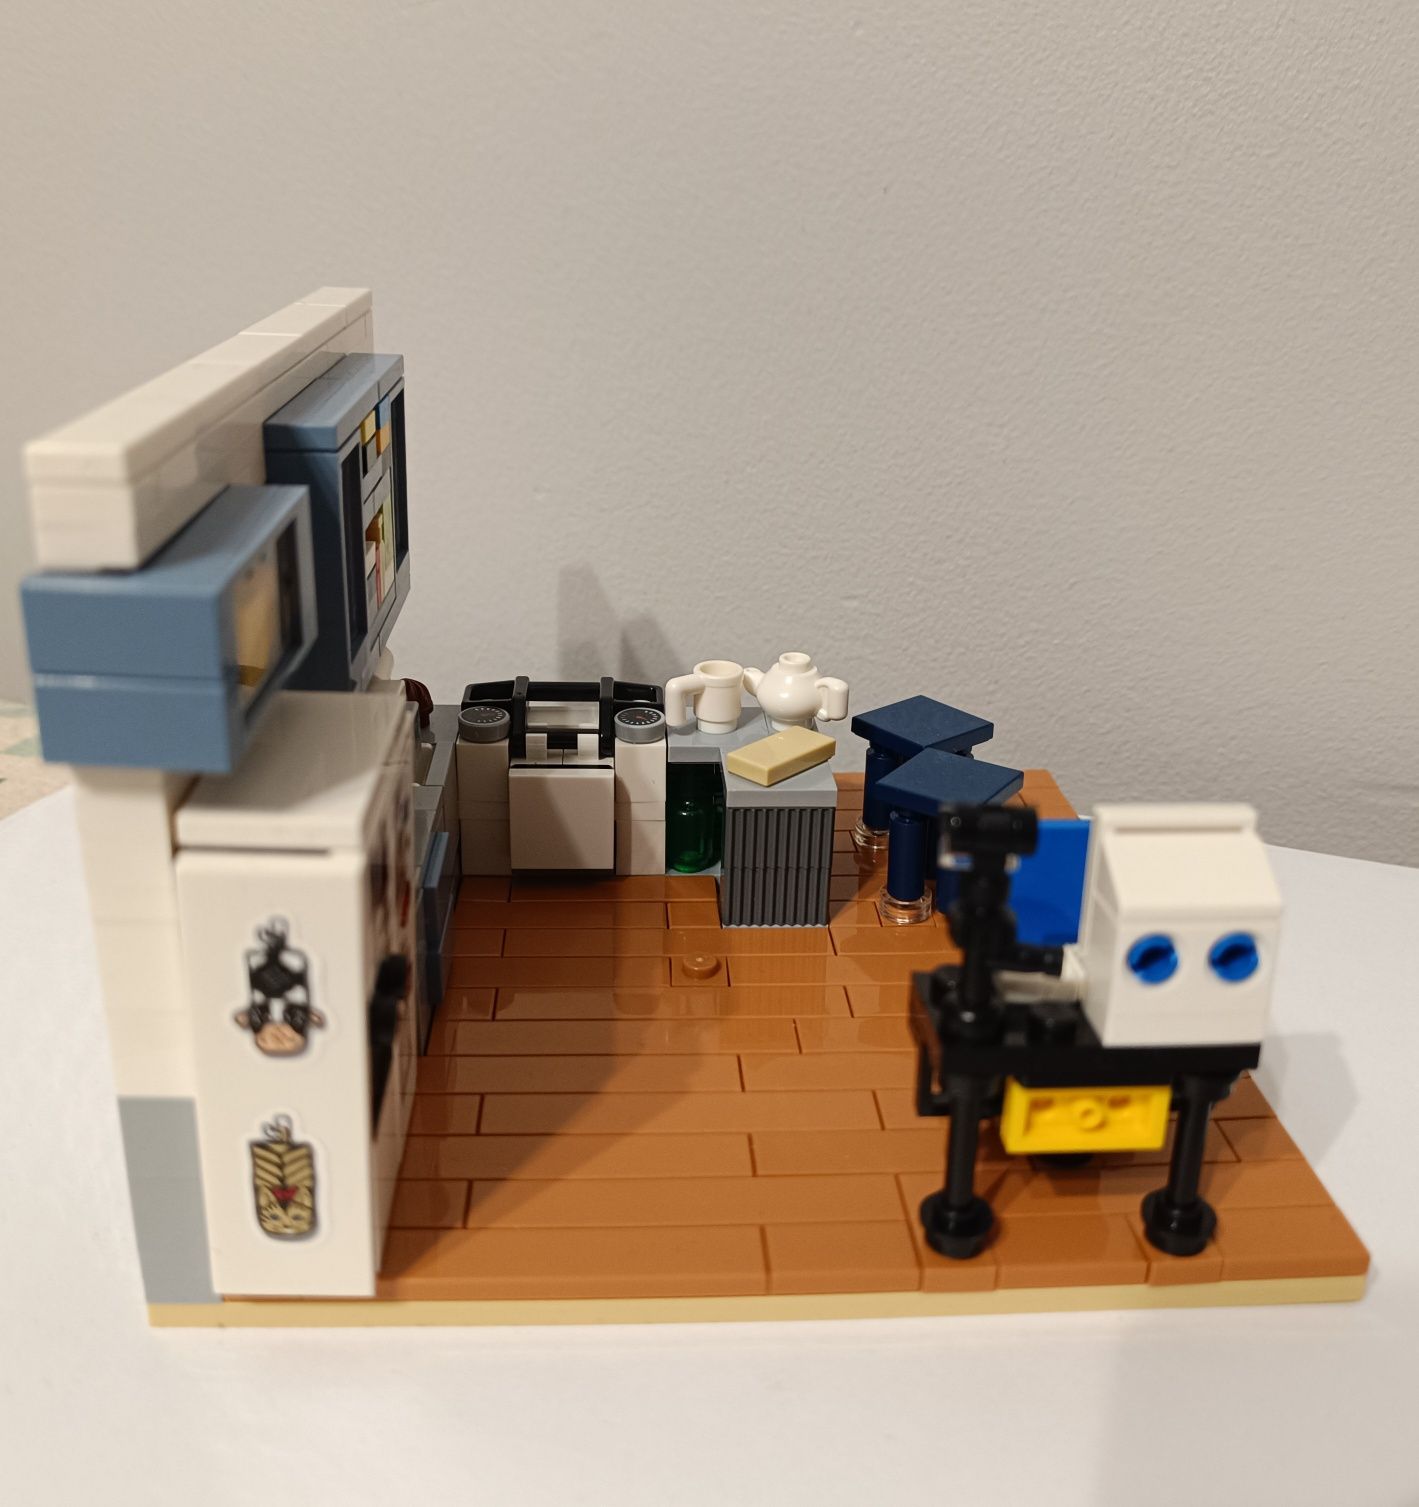 LEGO kuchnia z miejscem do pracy z zestawu 21328